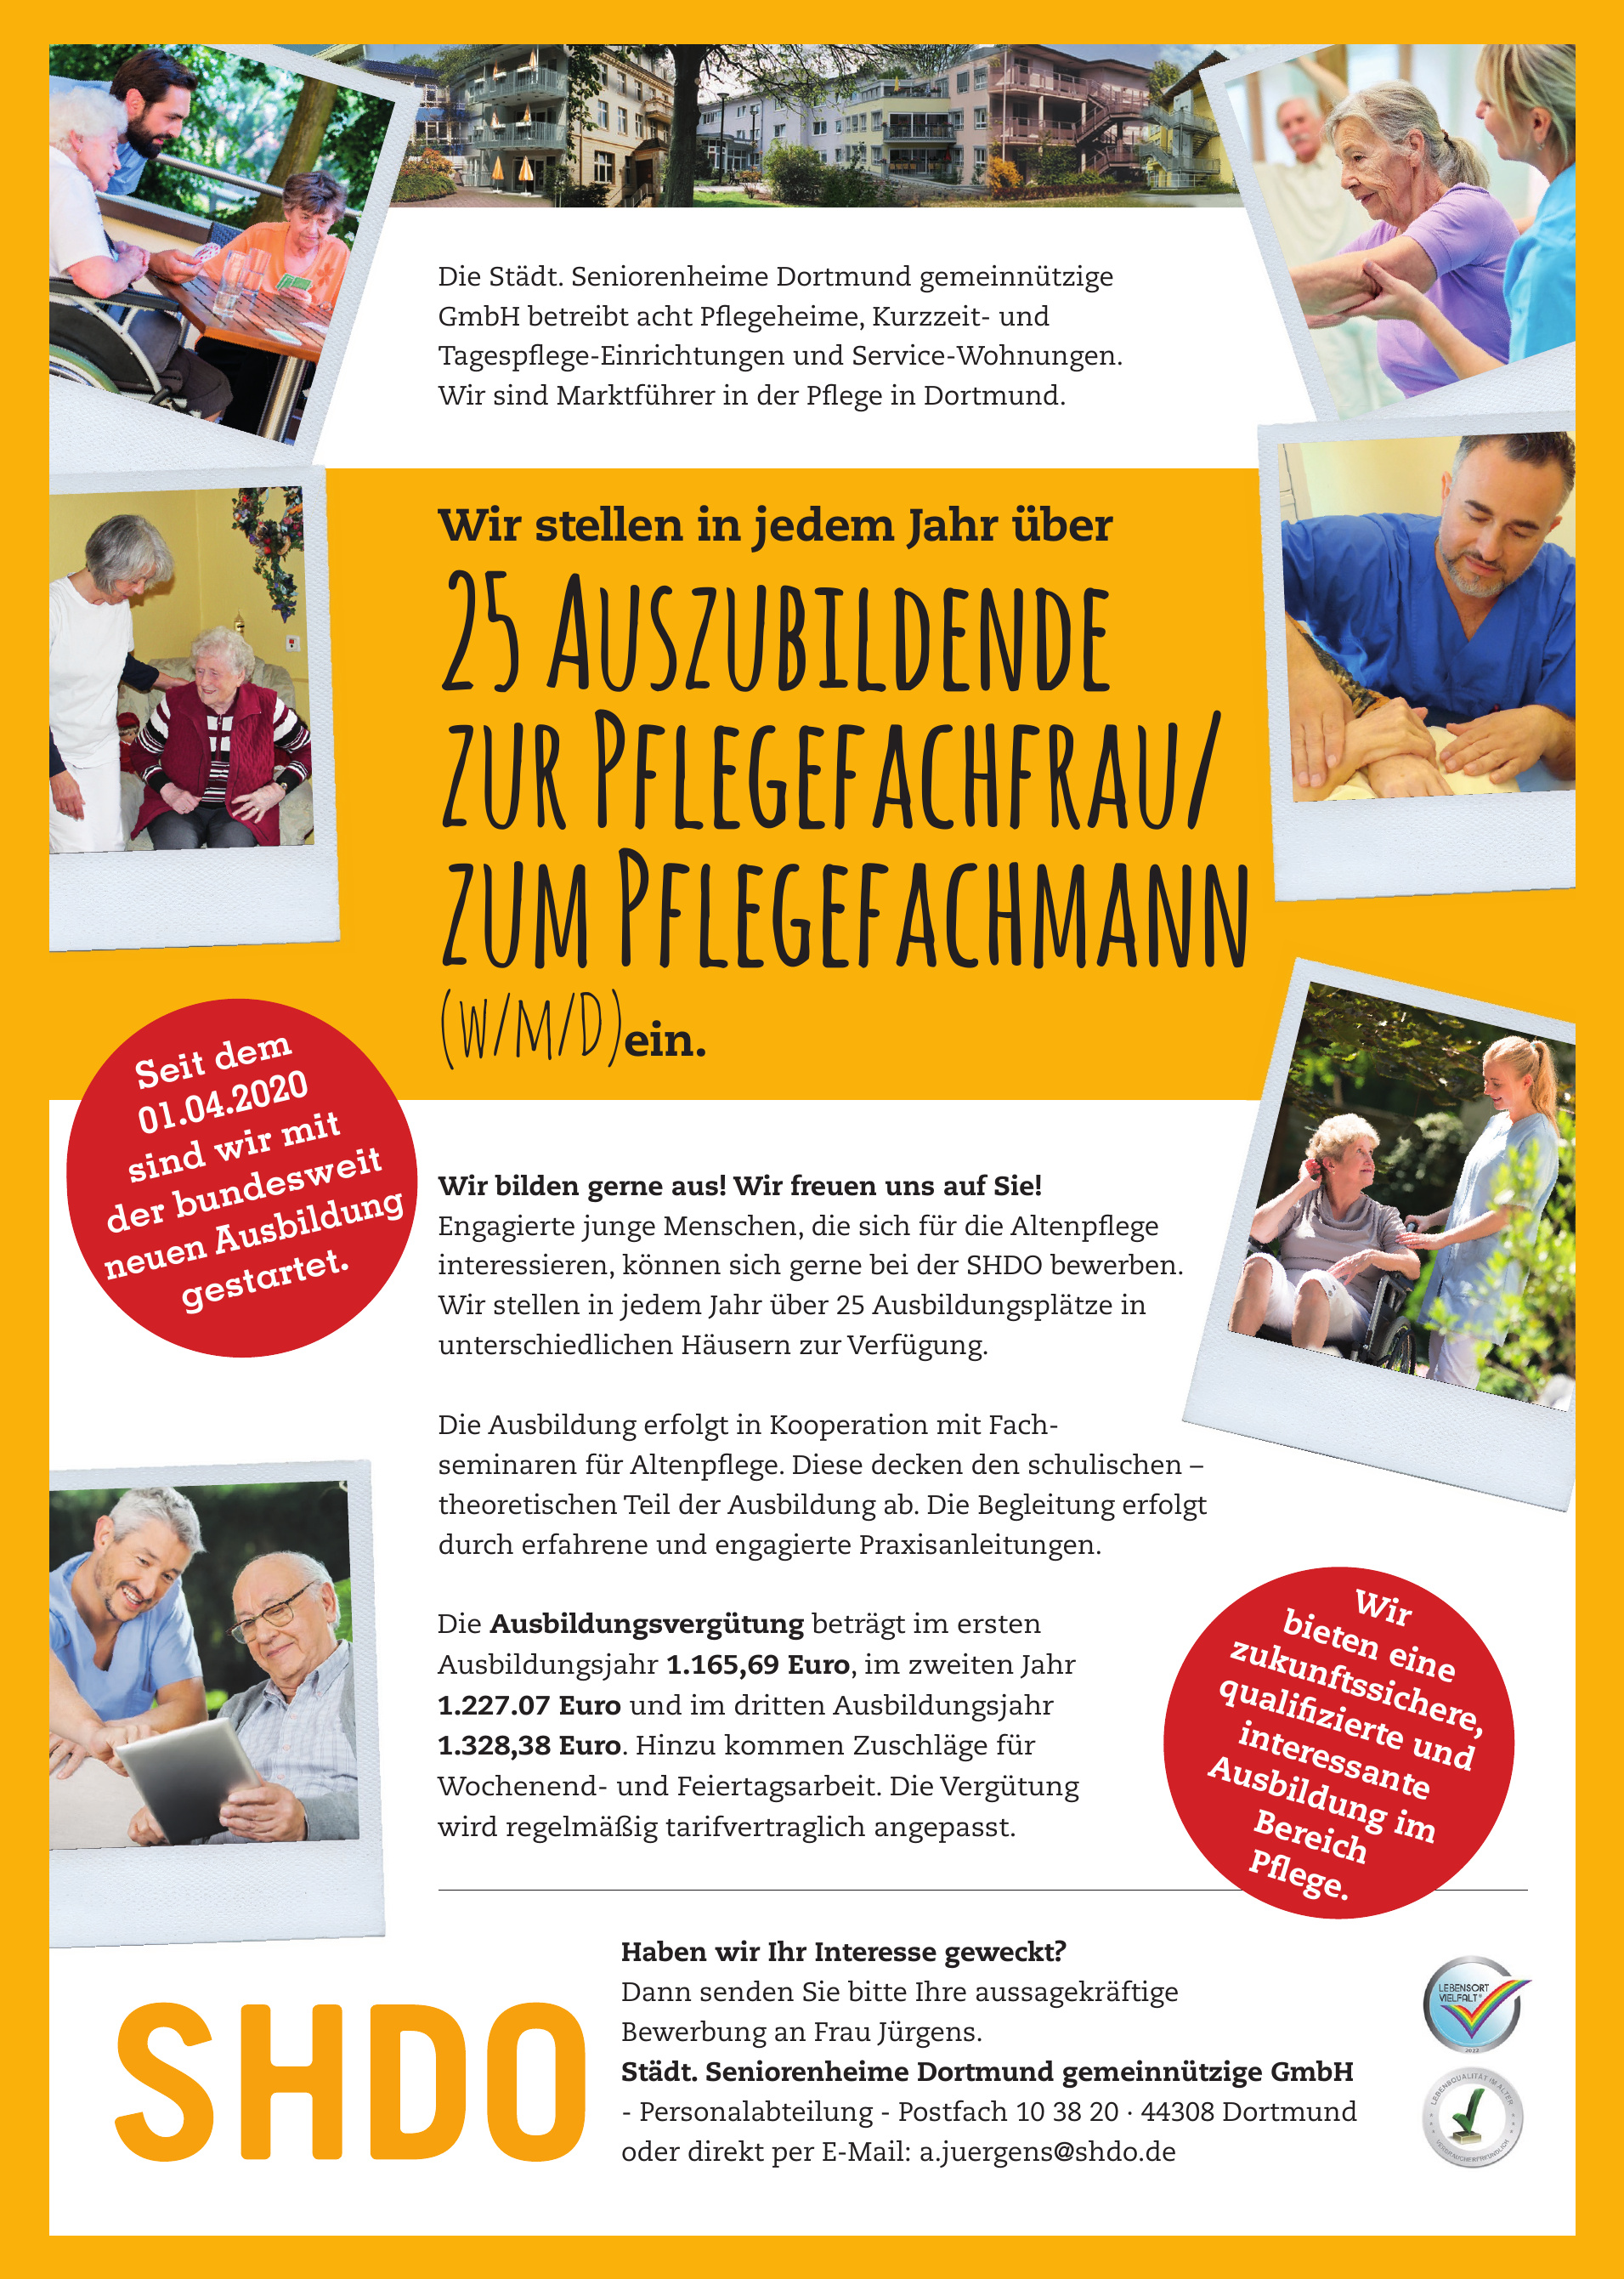 Städt. Seniorenheime Dortmund gemeinnützige GmbH